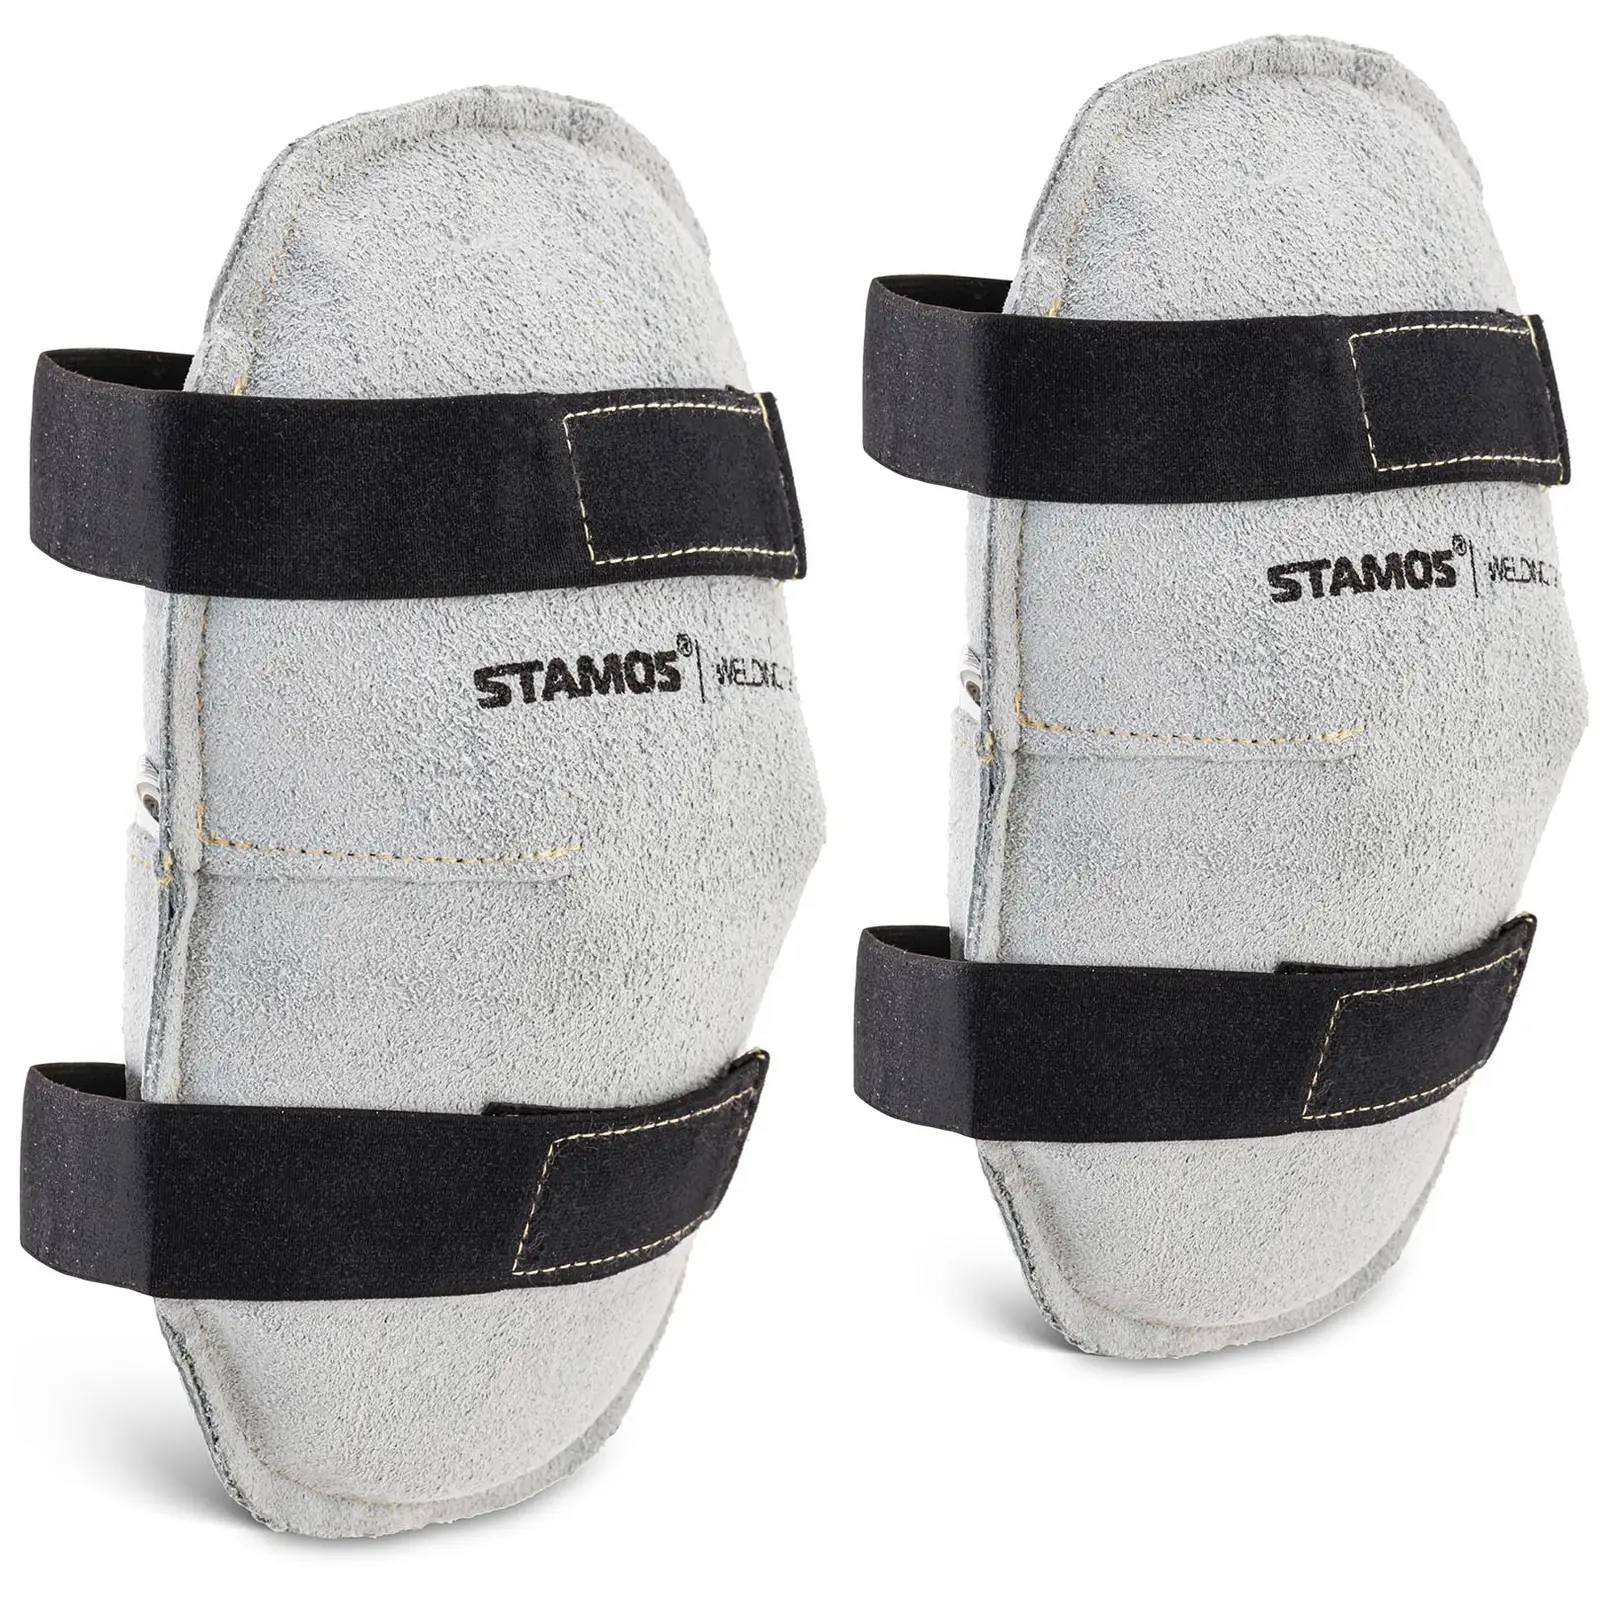 Chránič na kolena 22 x 16 x 5 cm - Příslušenství pro svařování Stamos Welding Group